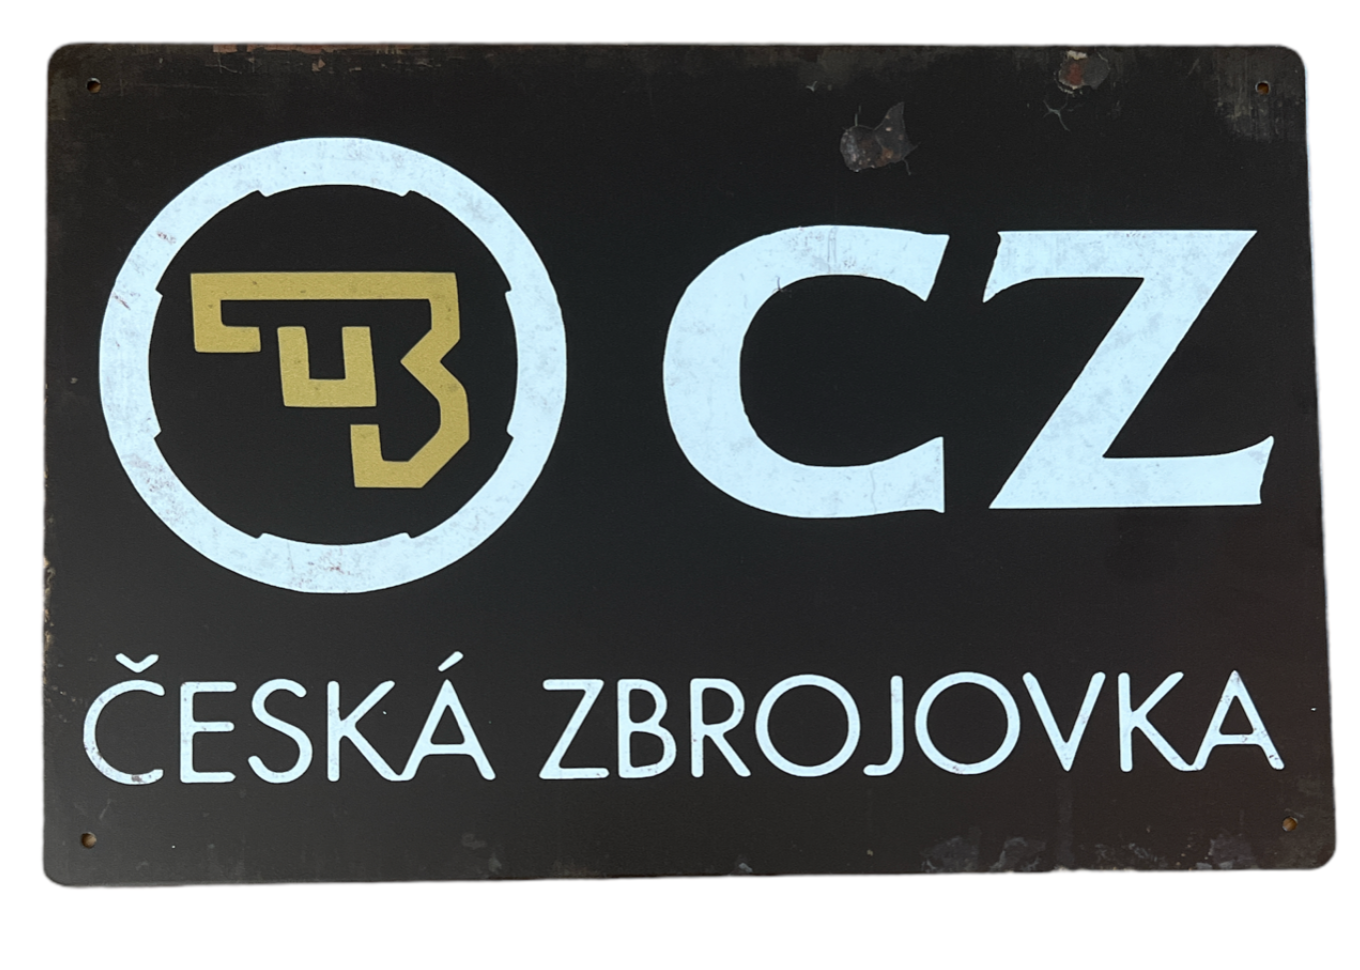 CZ - Metal tin sign